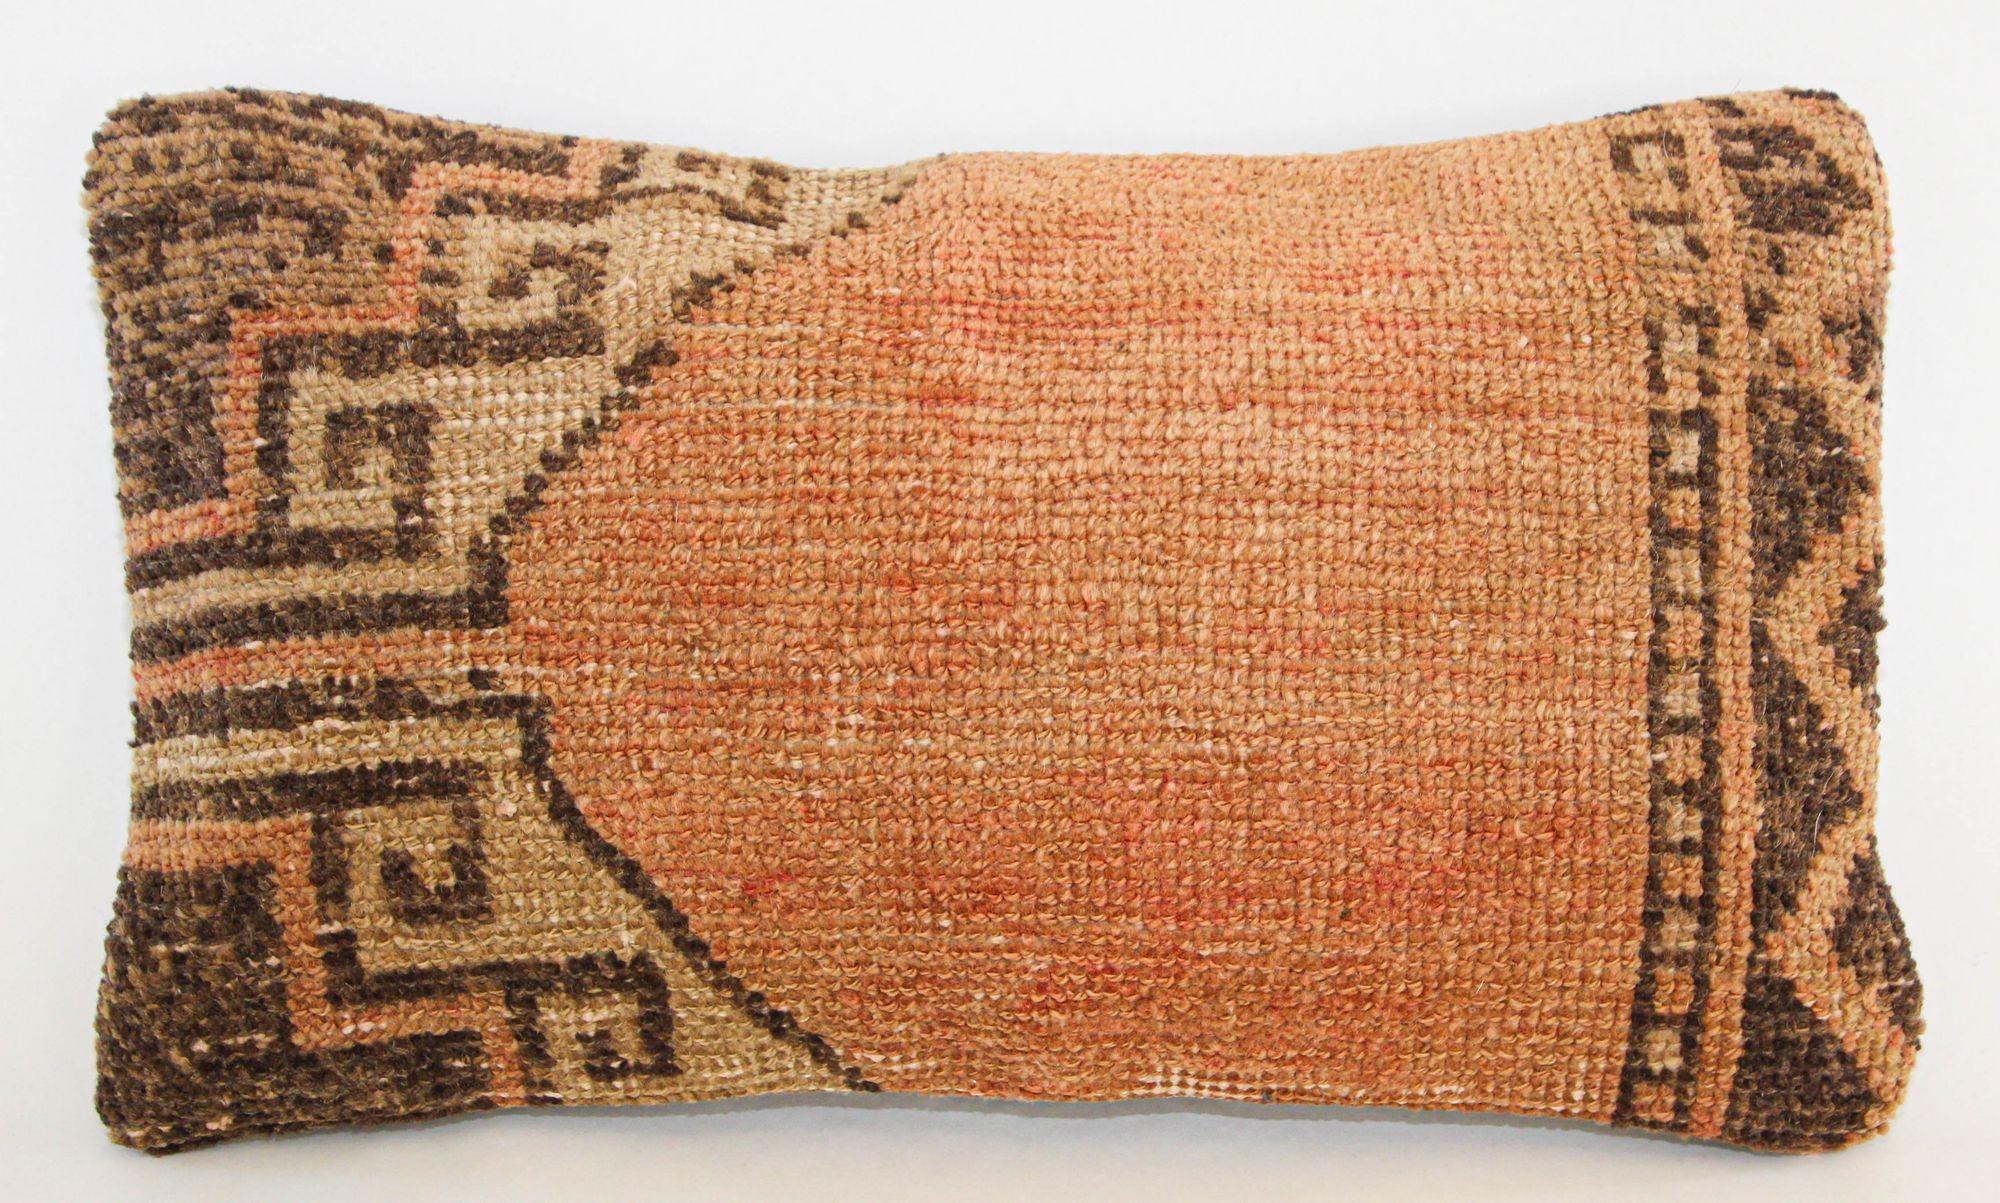 Tapis persan antique Tabriz Oreiller.
Ce coussin lombaire a été fabriqué à partir d'un tapis persan Tabriz du début du XXe siècle.
Ce ravissant coussin décoratif ancien présente un tapis en tissu ancien sur le devant, caractérisé par des motifs